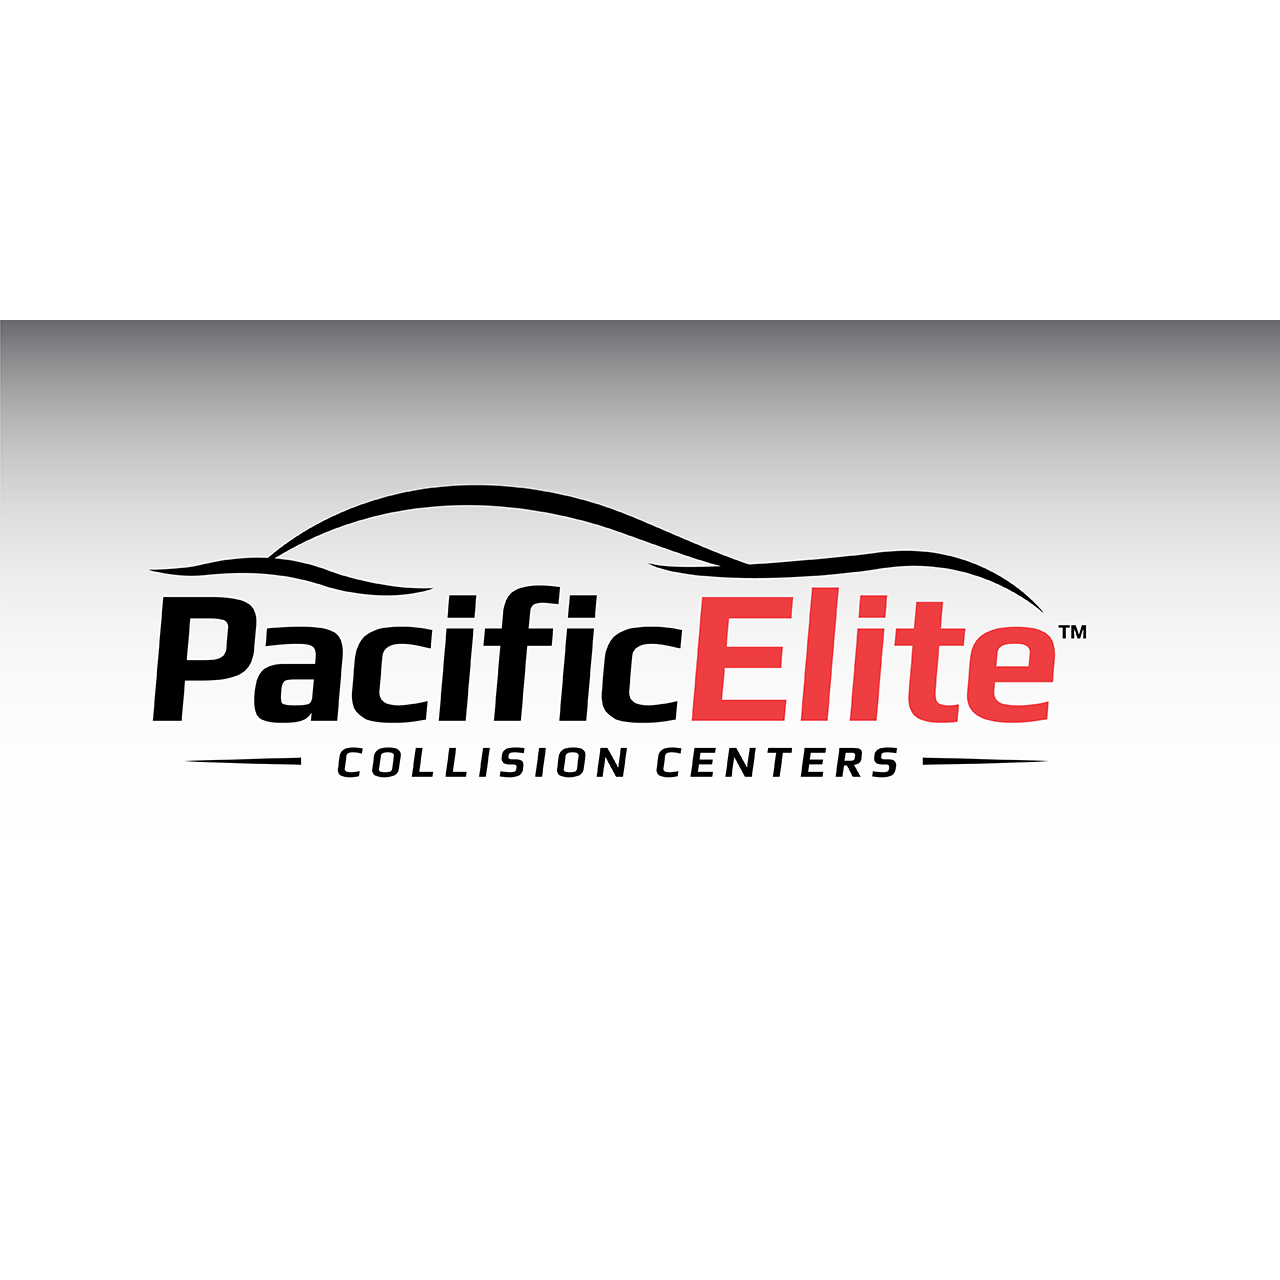 Pacific Elite Collision Centers - Covina Logo